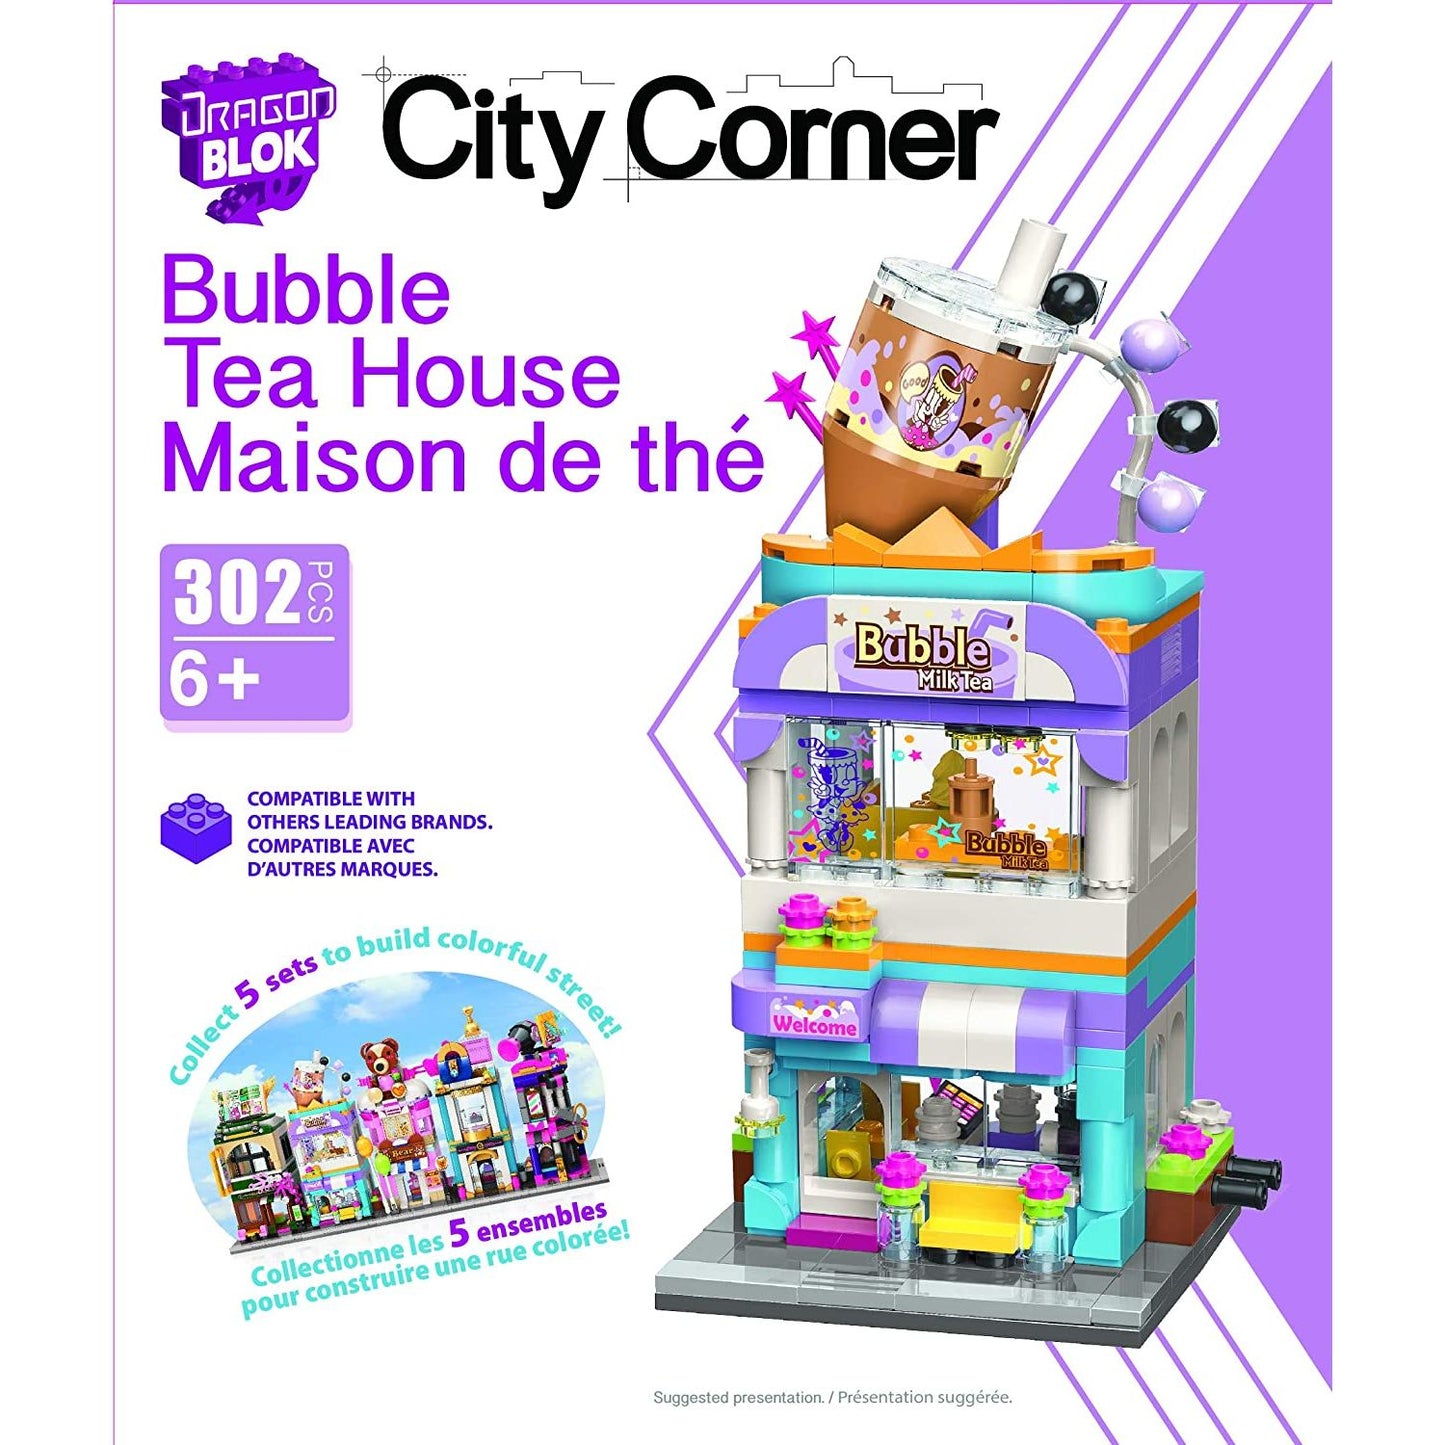 Dragon Blok - City Corner - Bubble Tea House - 302 Pieces Toy Building Set